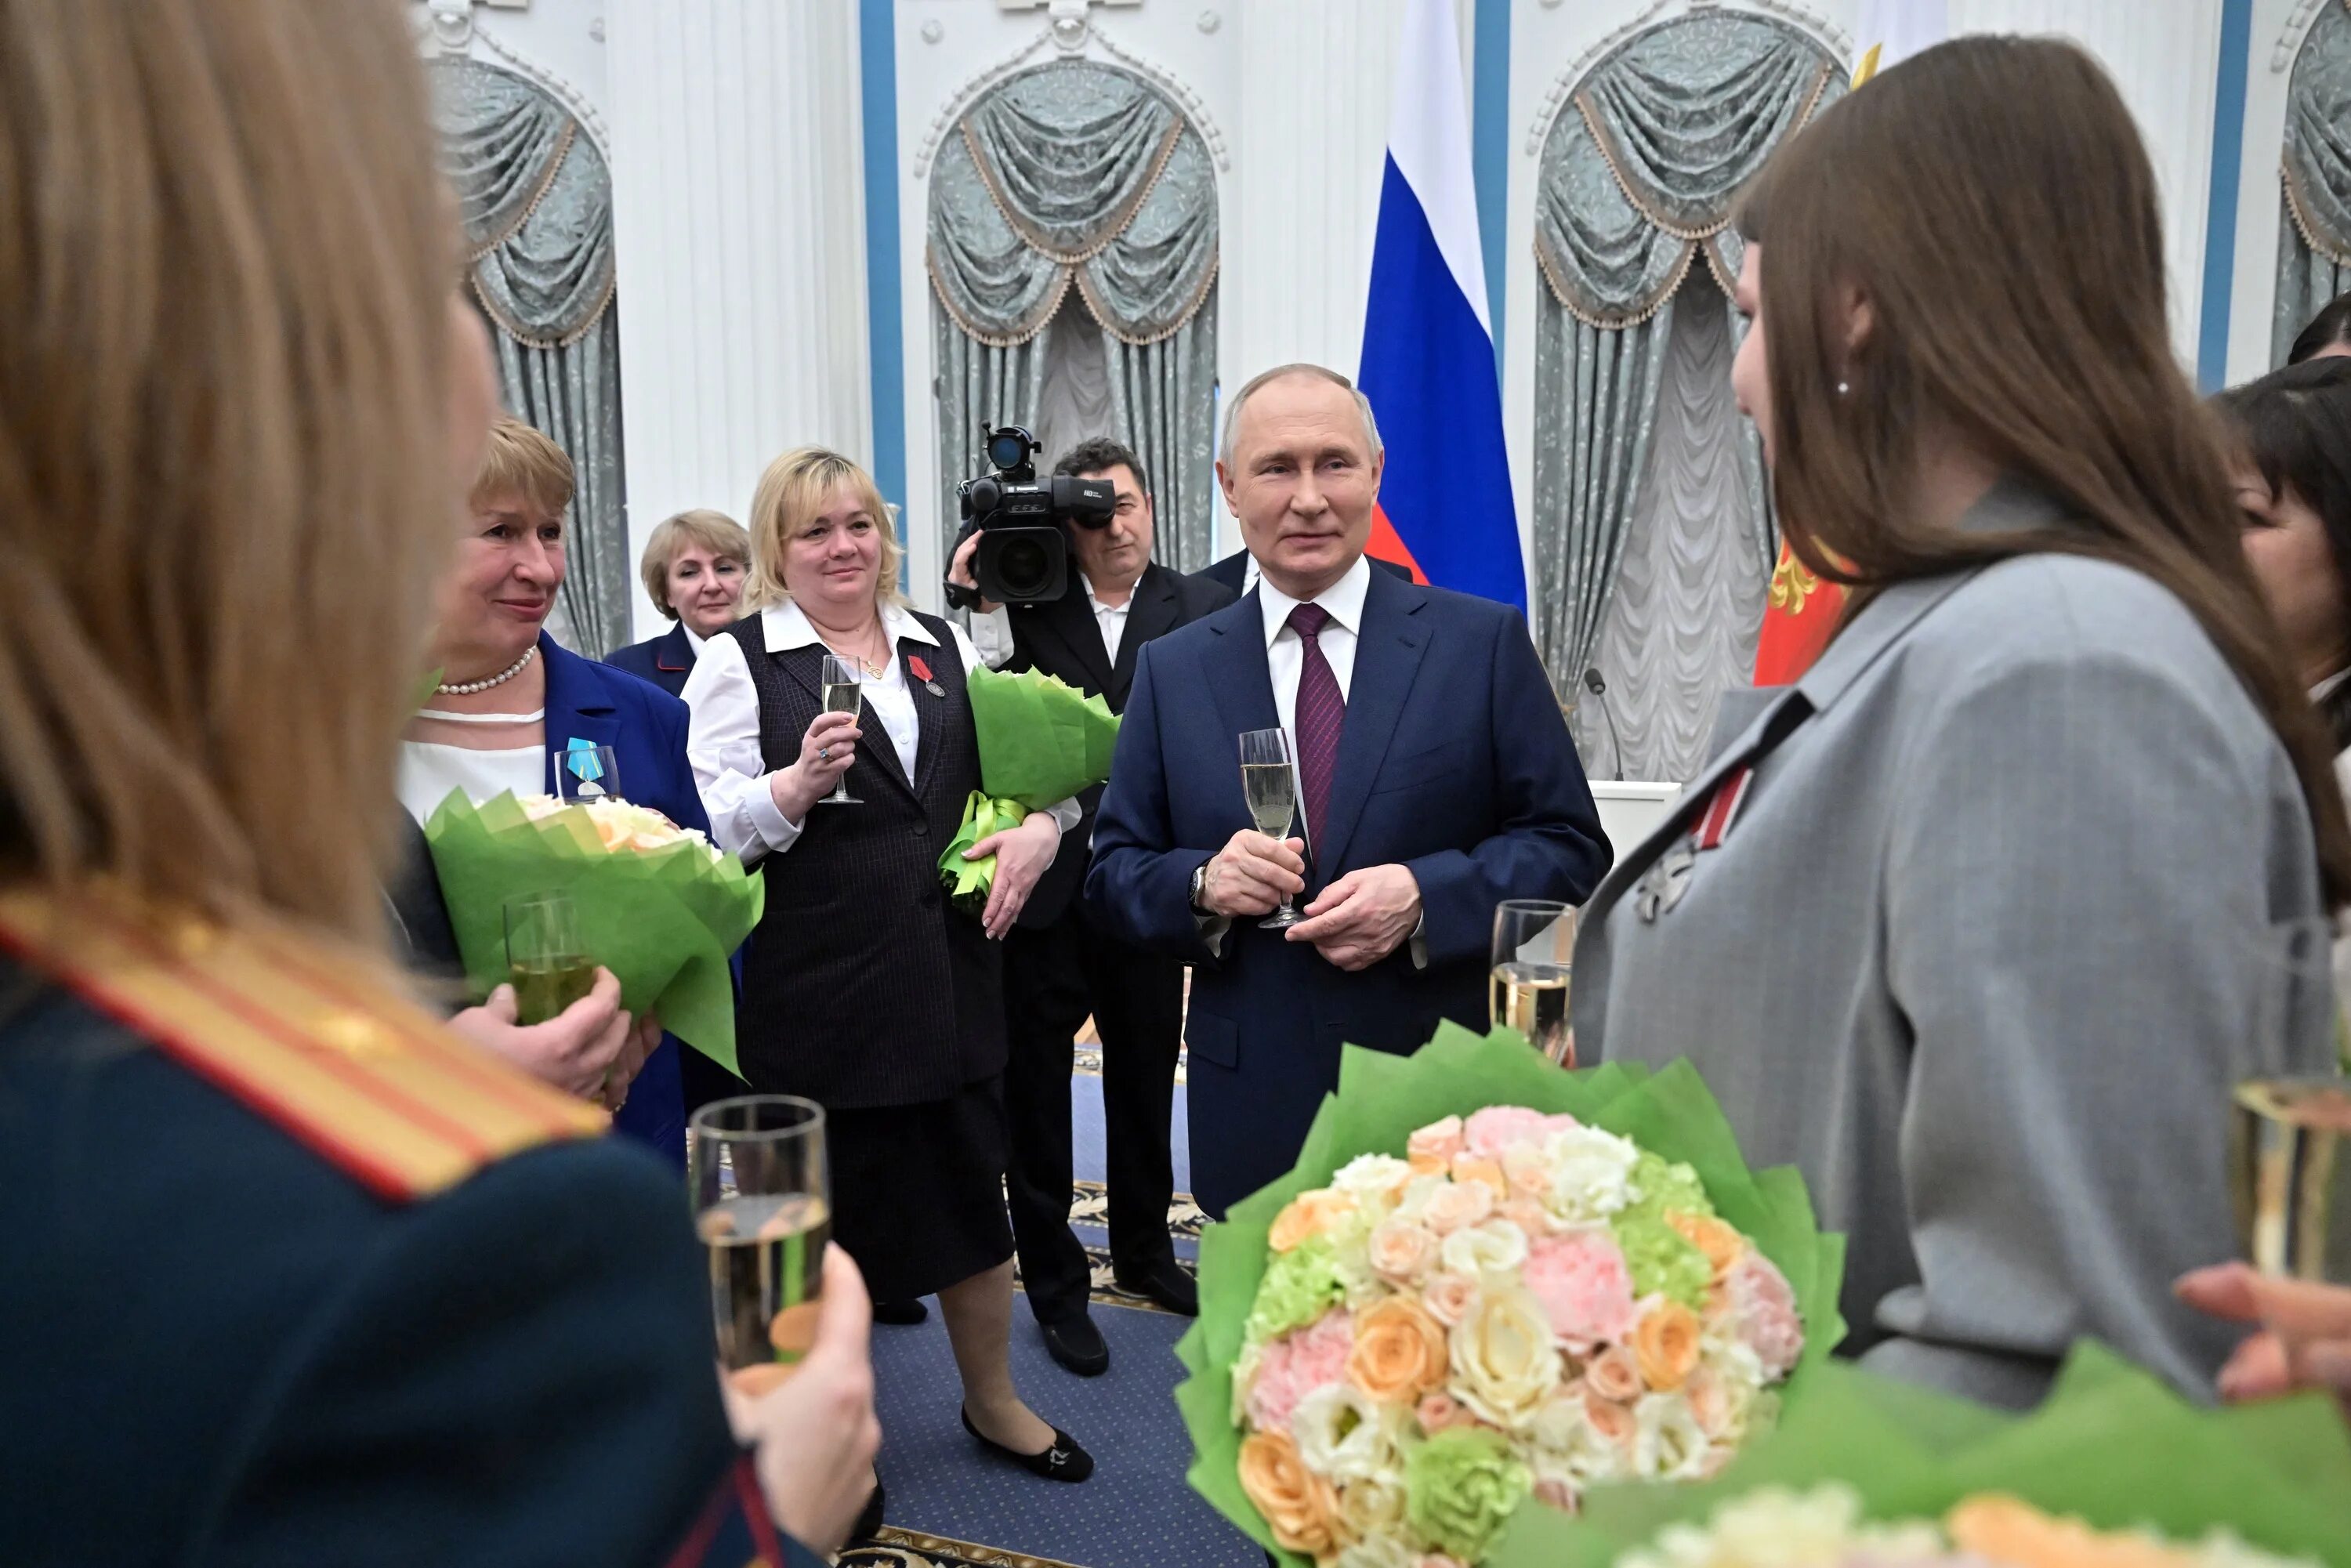 Вручение наград. Награждение президентом. Церемония награждения в Кремле.